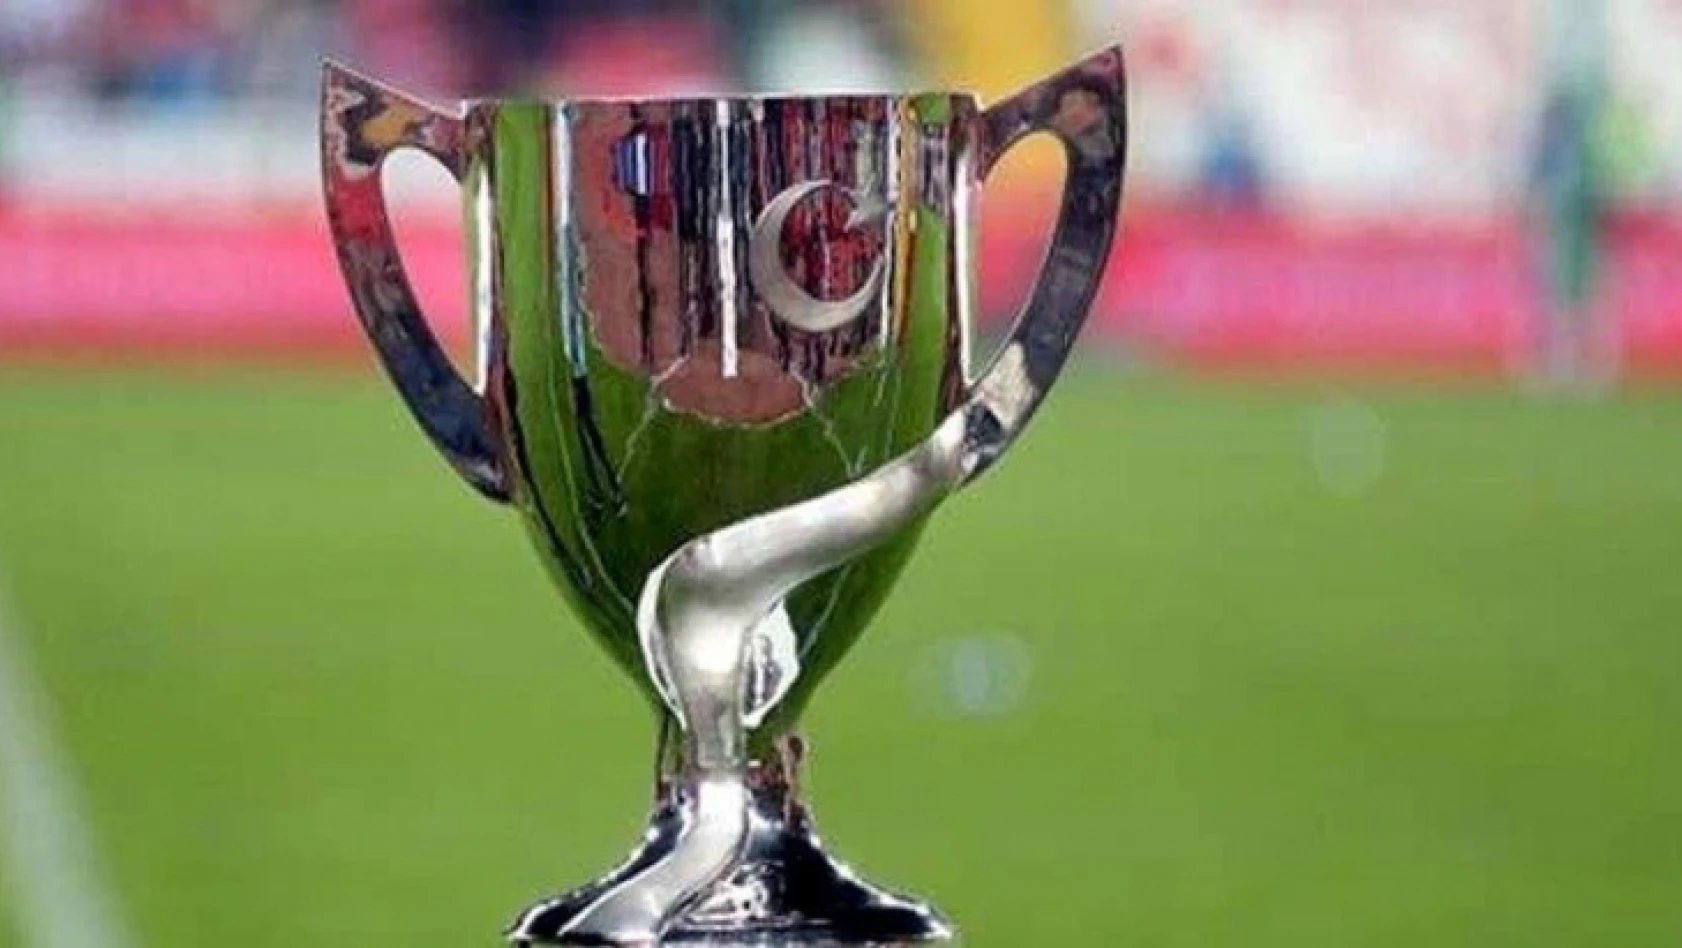 Ziraat Türkiye Kupası finalinin hakemi belli oldu